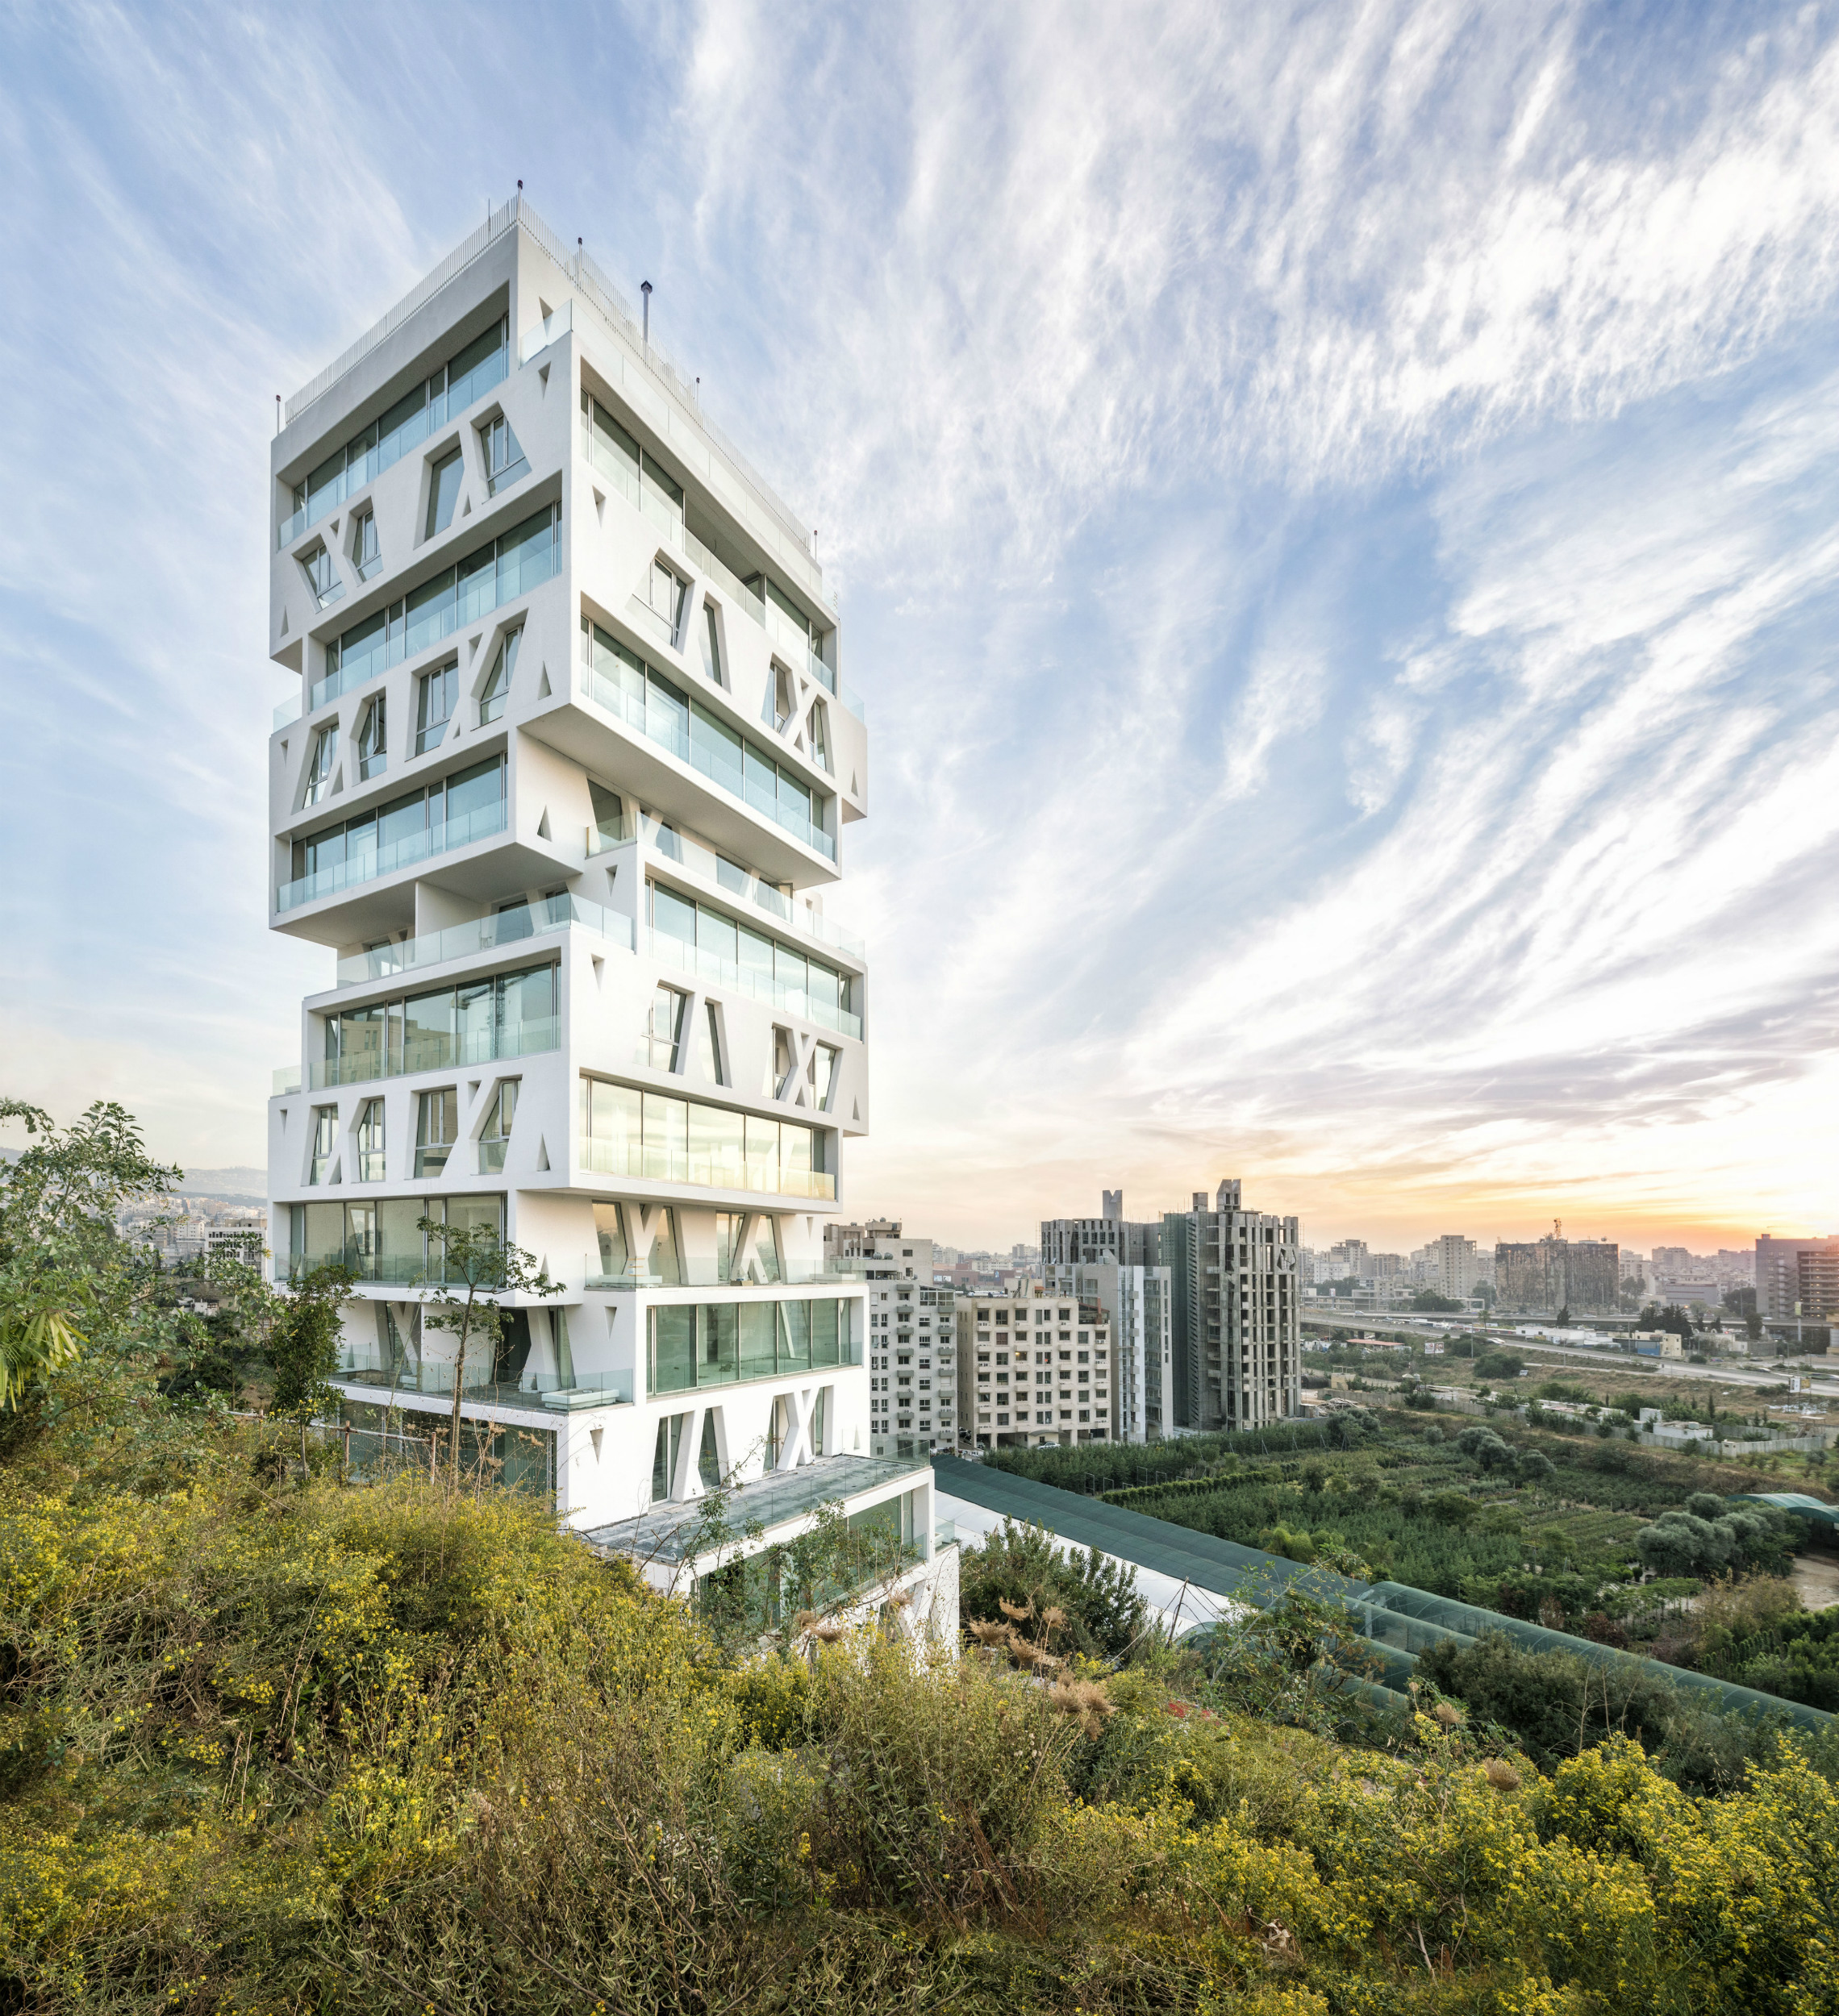 El edificio The Cube, ubicado en Beirut, Líbano consta de 14 plantas similares a cajas. Foto: Matthijs van Roon. Foto cedida por The Council on Tall Buildings and Urban Habitat (CTBUH).